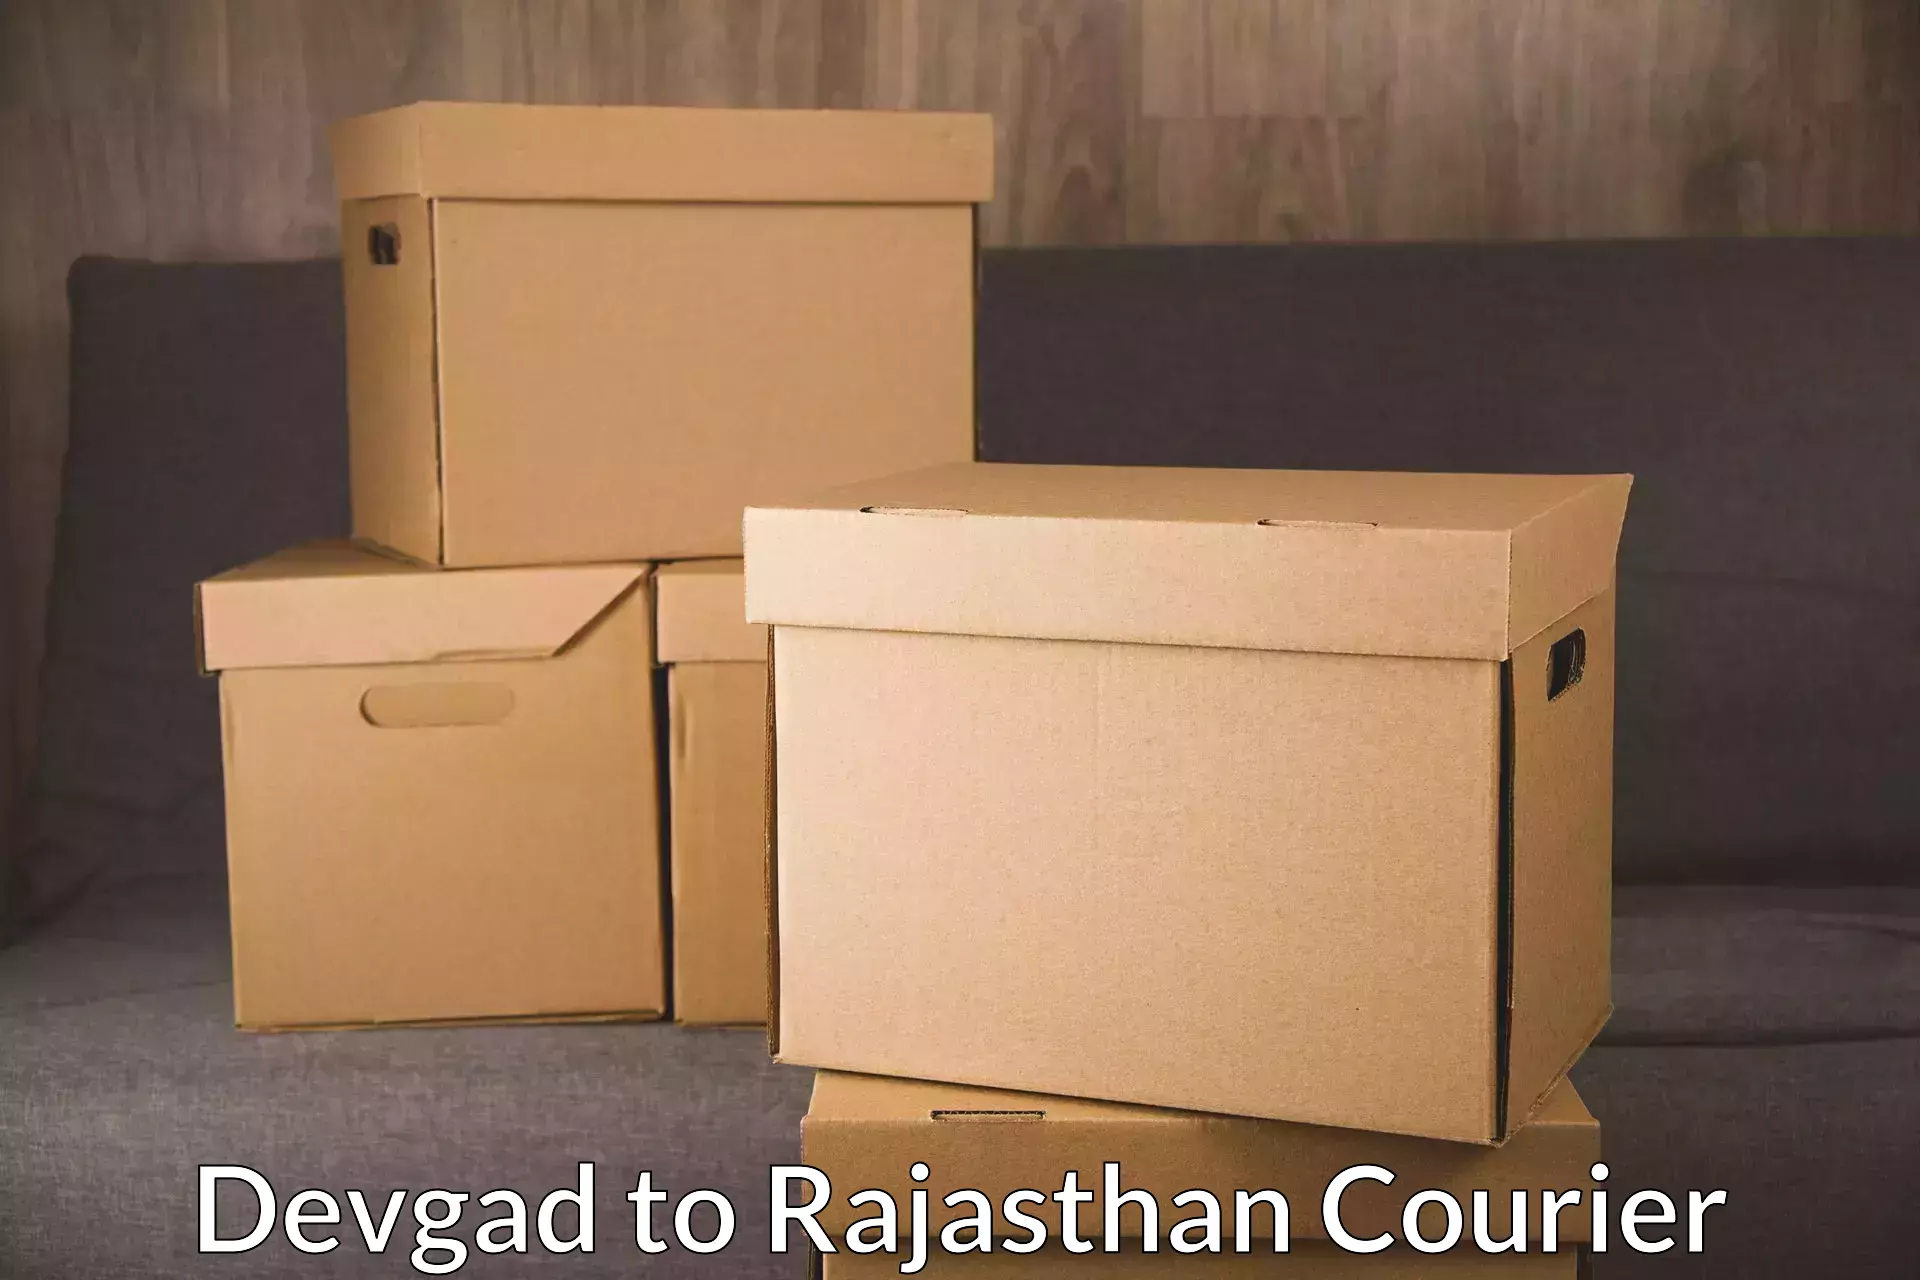 Professional parcel services Devgad to Lohawat